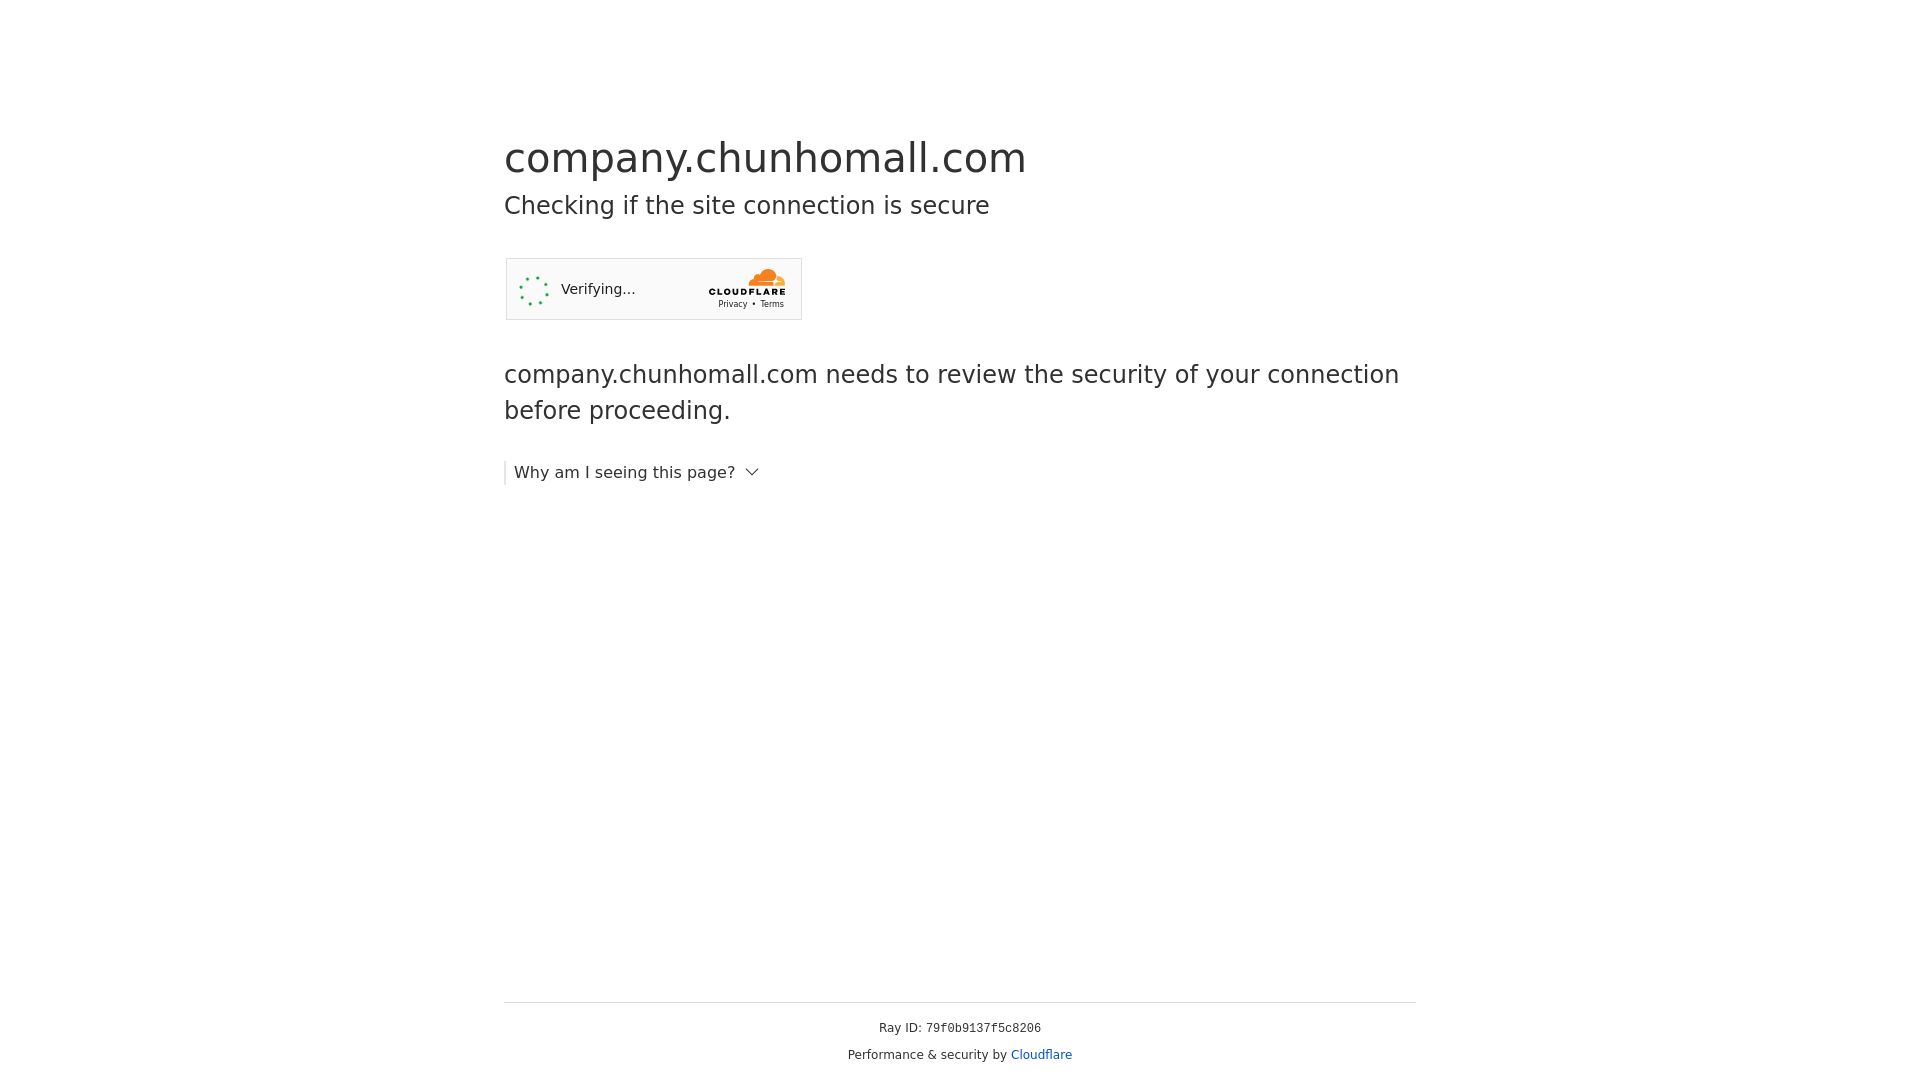 вебсайт company.chunhomall.com Є   ONLINE